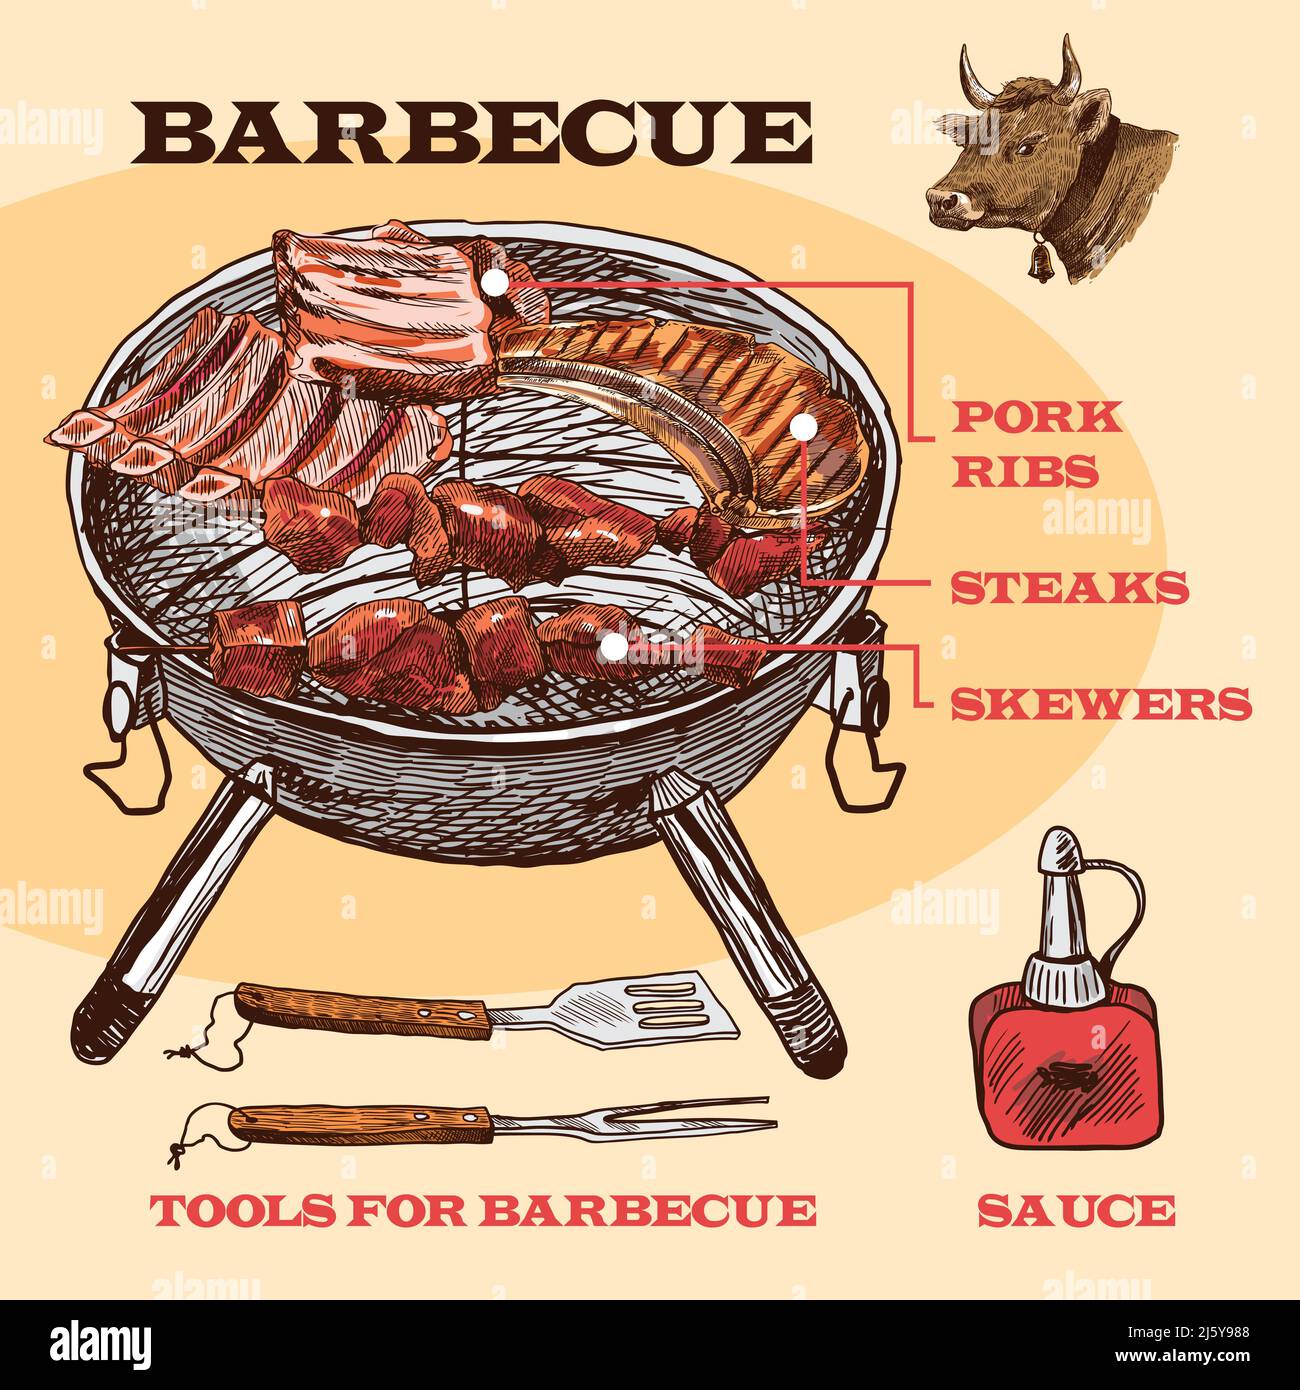 Fleisch bbq Set Skizze Infografik mit Schweinerippen und Steaks vektorgrafik Stock Vektor